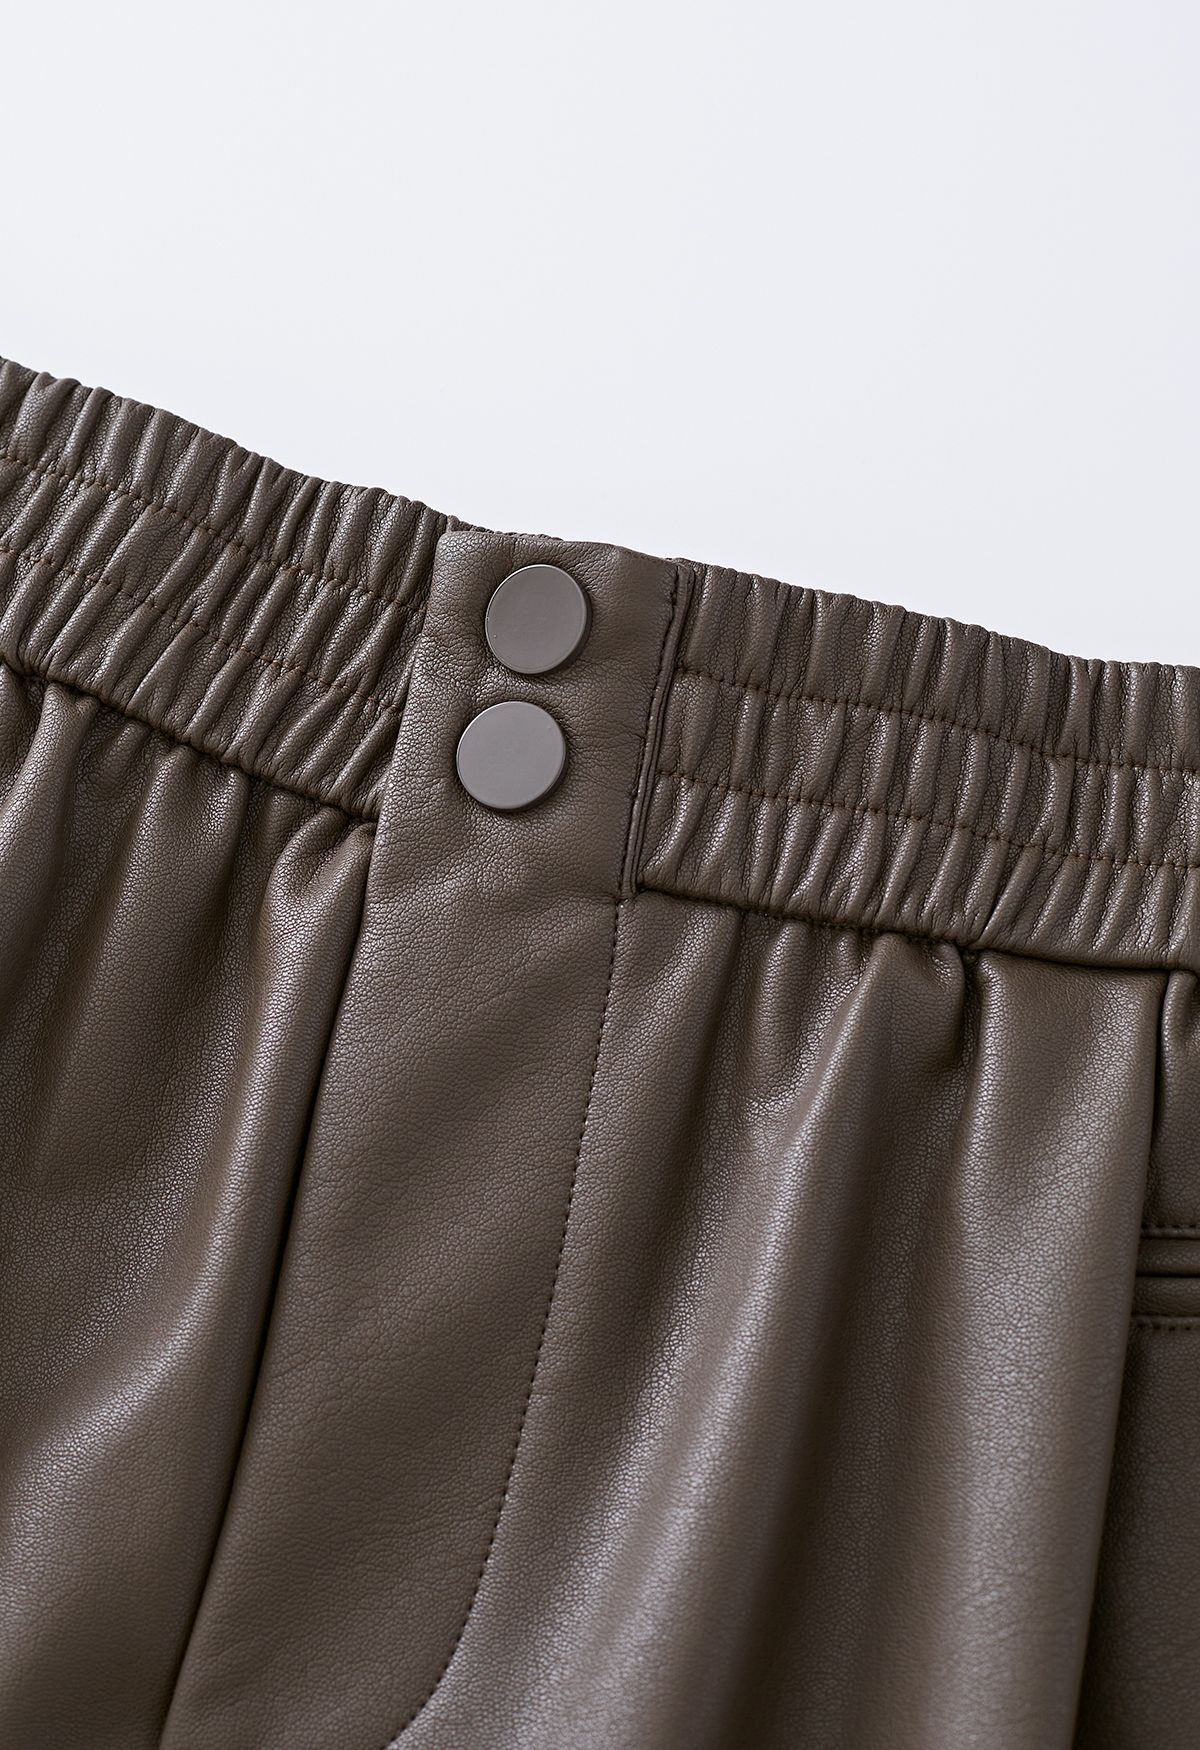 Strukturierte, geknöpfte Kunstleder-Shorts in Braun